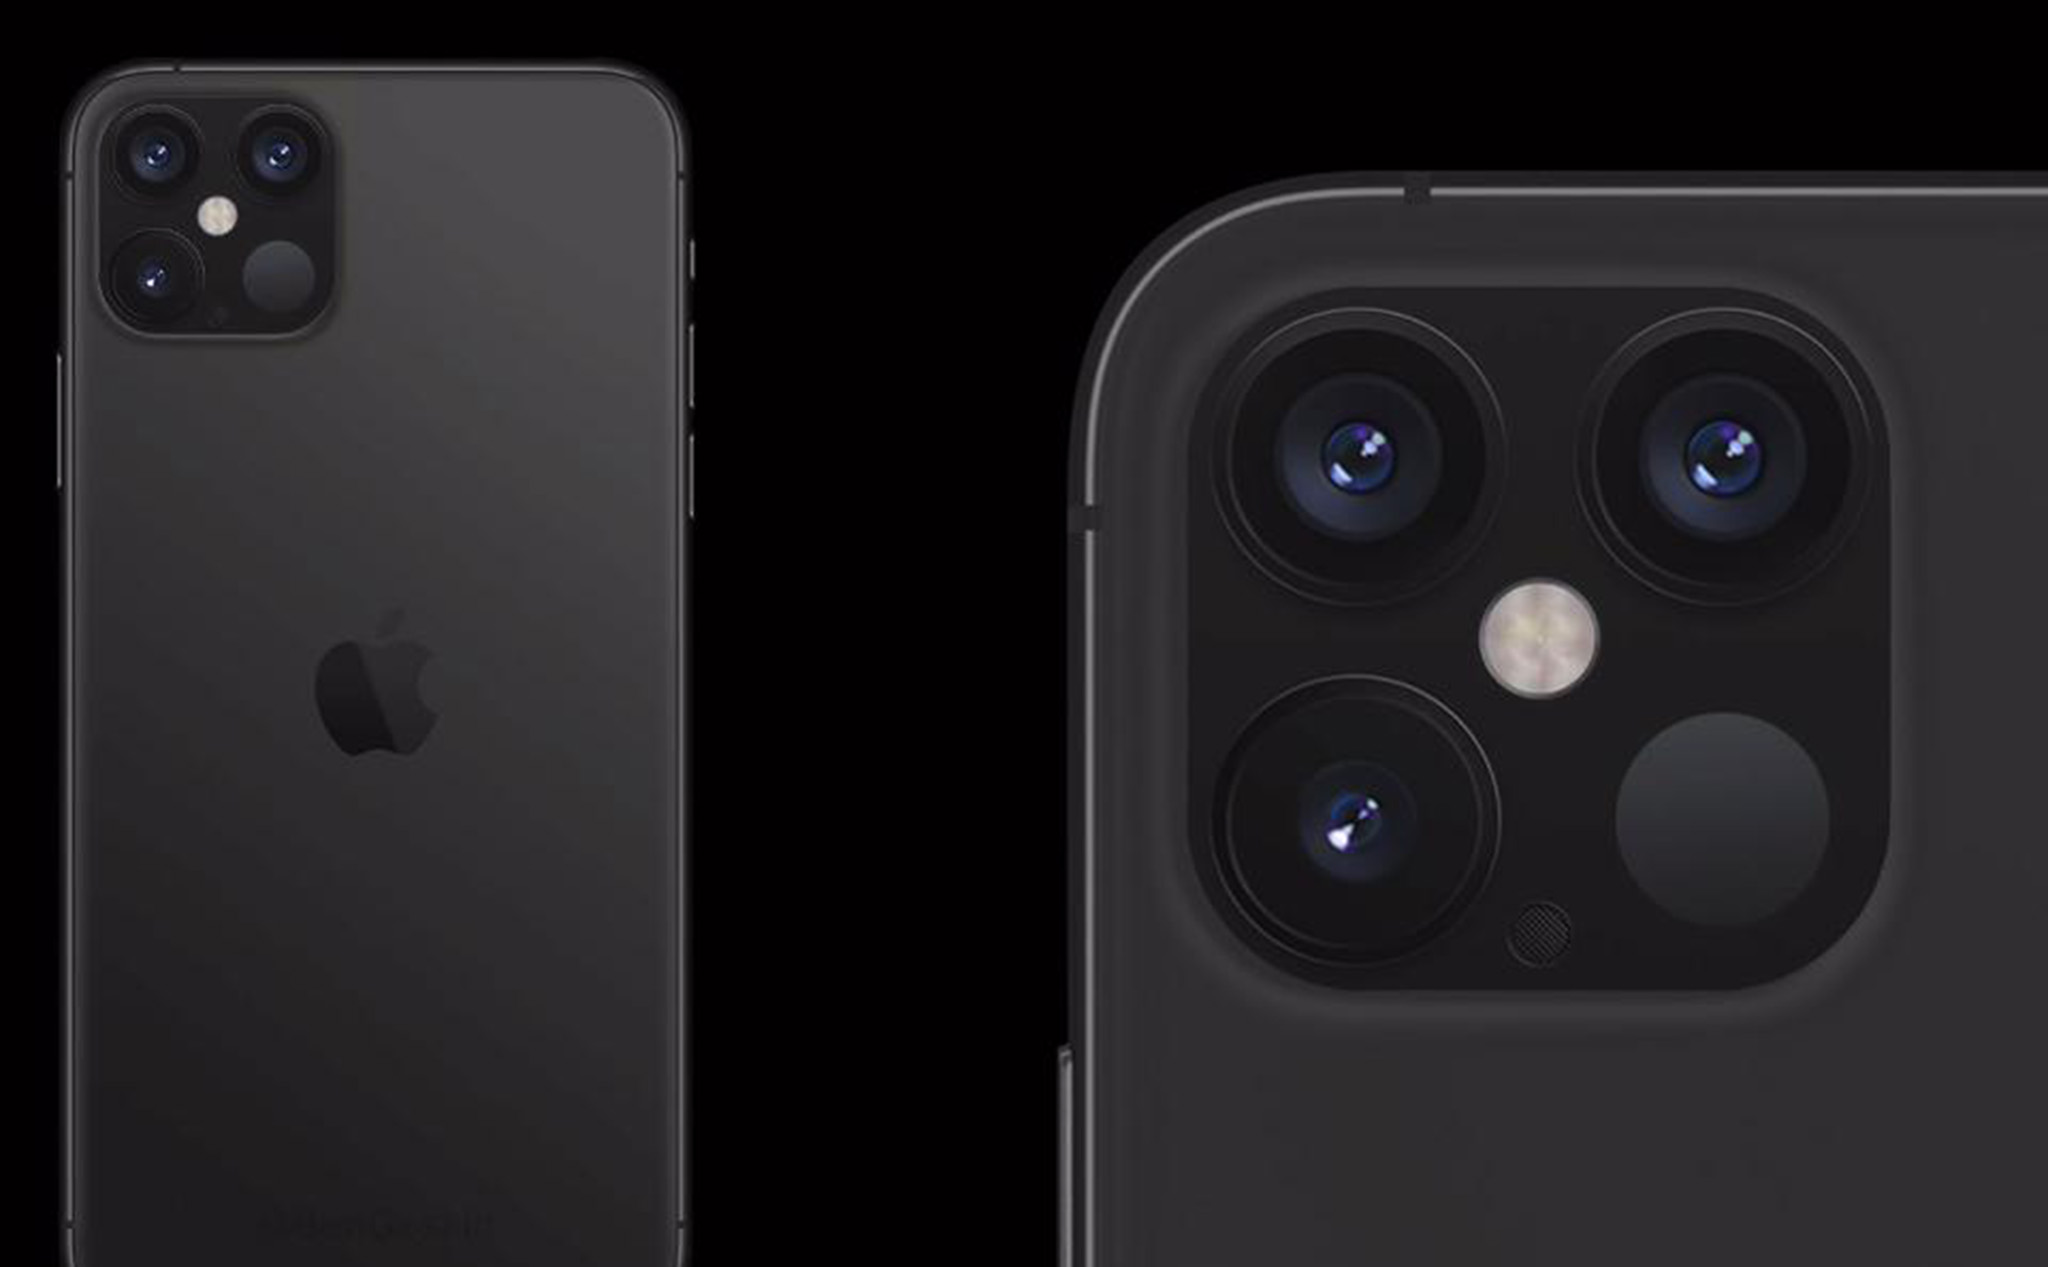 Từ cụm camera iPad Pro 2020, có thể chúng ta đã biết về iPhone 12